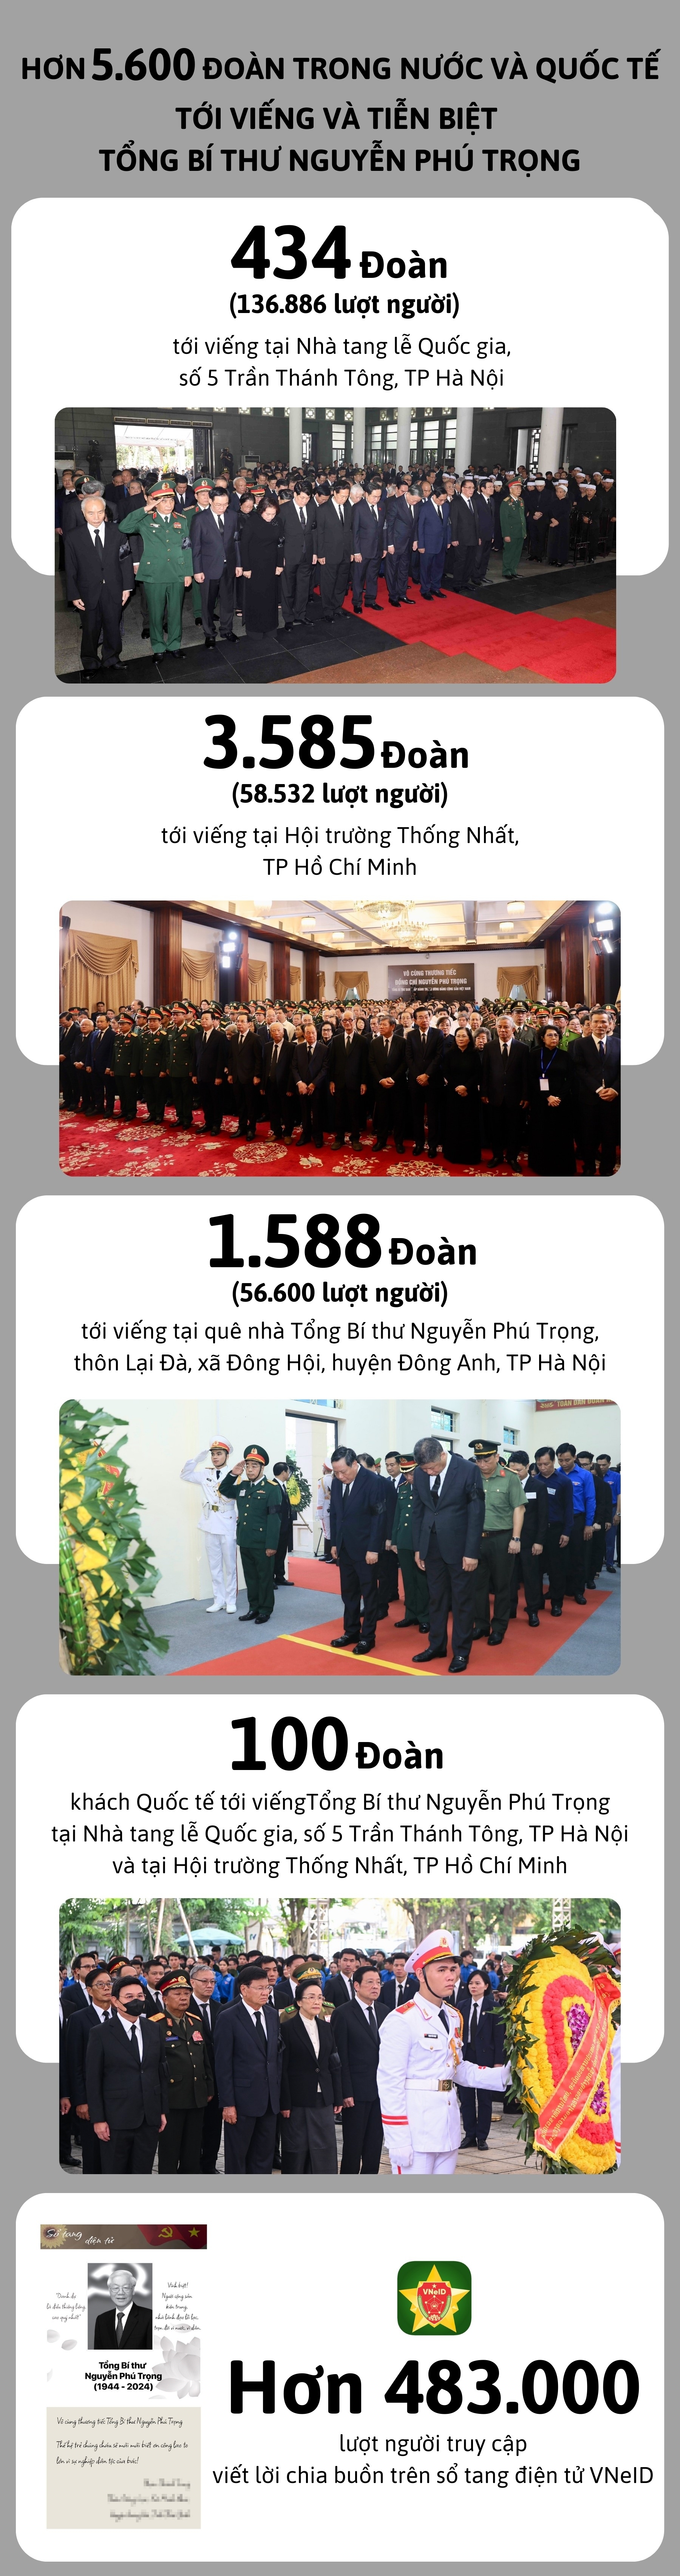 Hơn 5.600 đoàn trong nước, quốc tế viếng Tổng Bí thư Nguyễn Phú Trọng